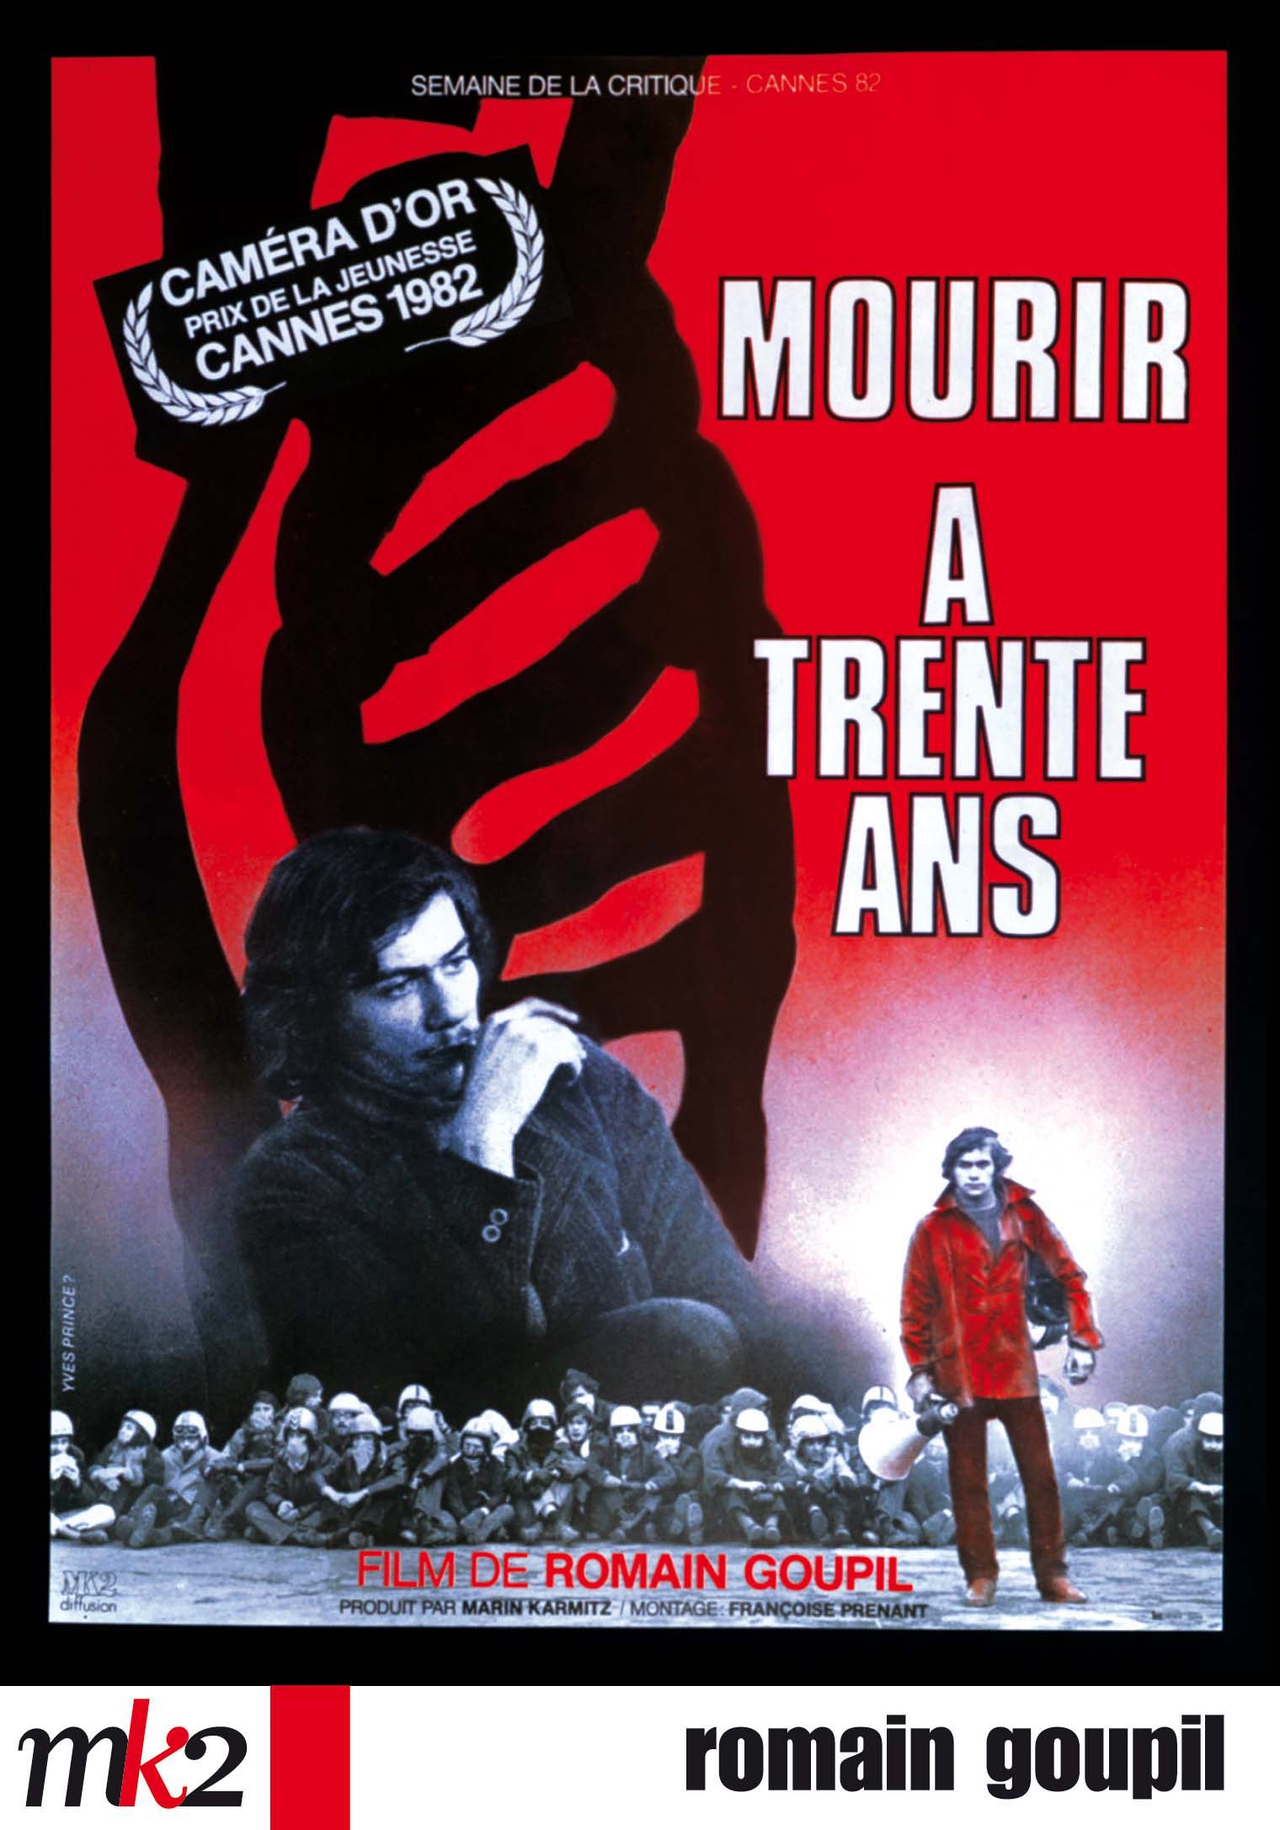  فیلم سینمایی Mourir à 30 ans به کارگردانی Romain Goupil